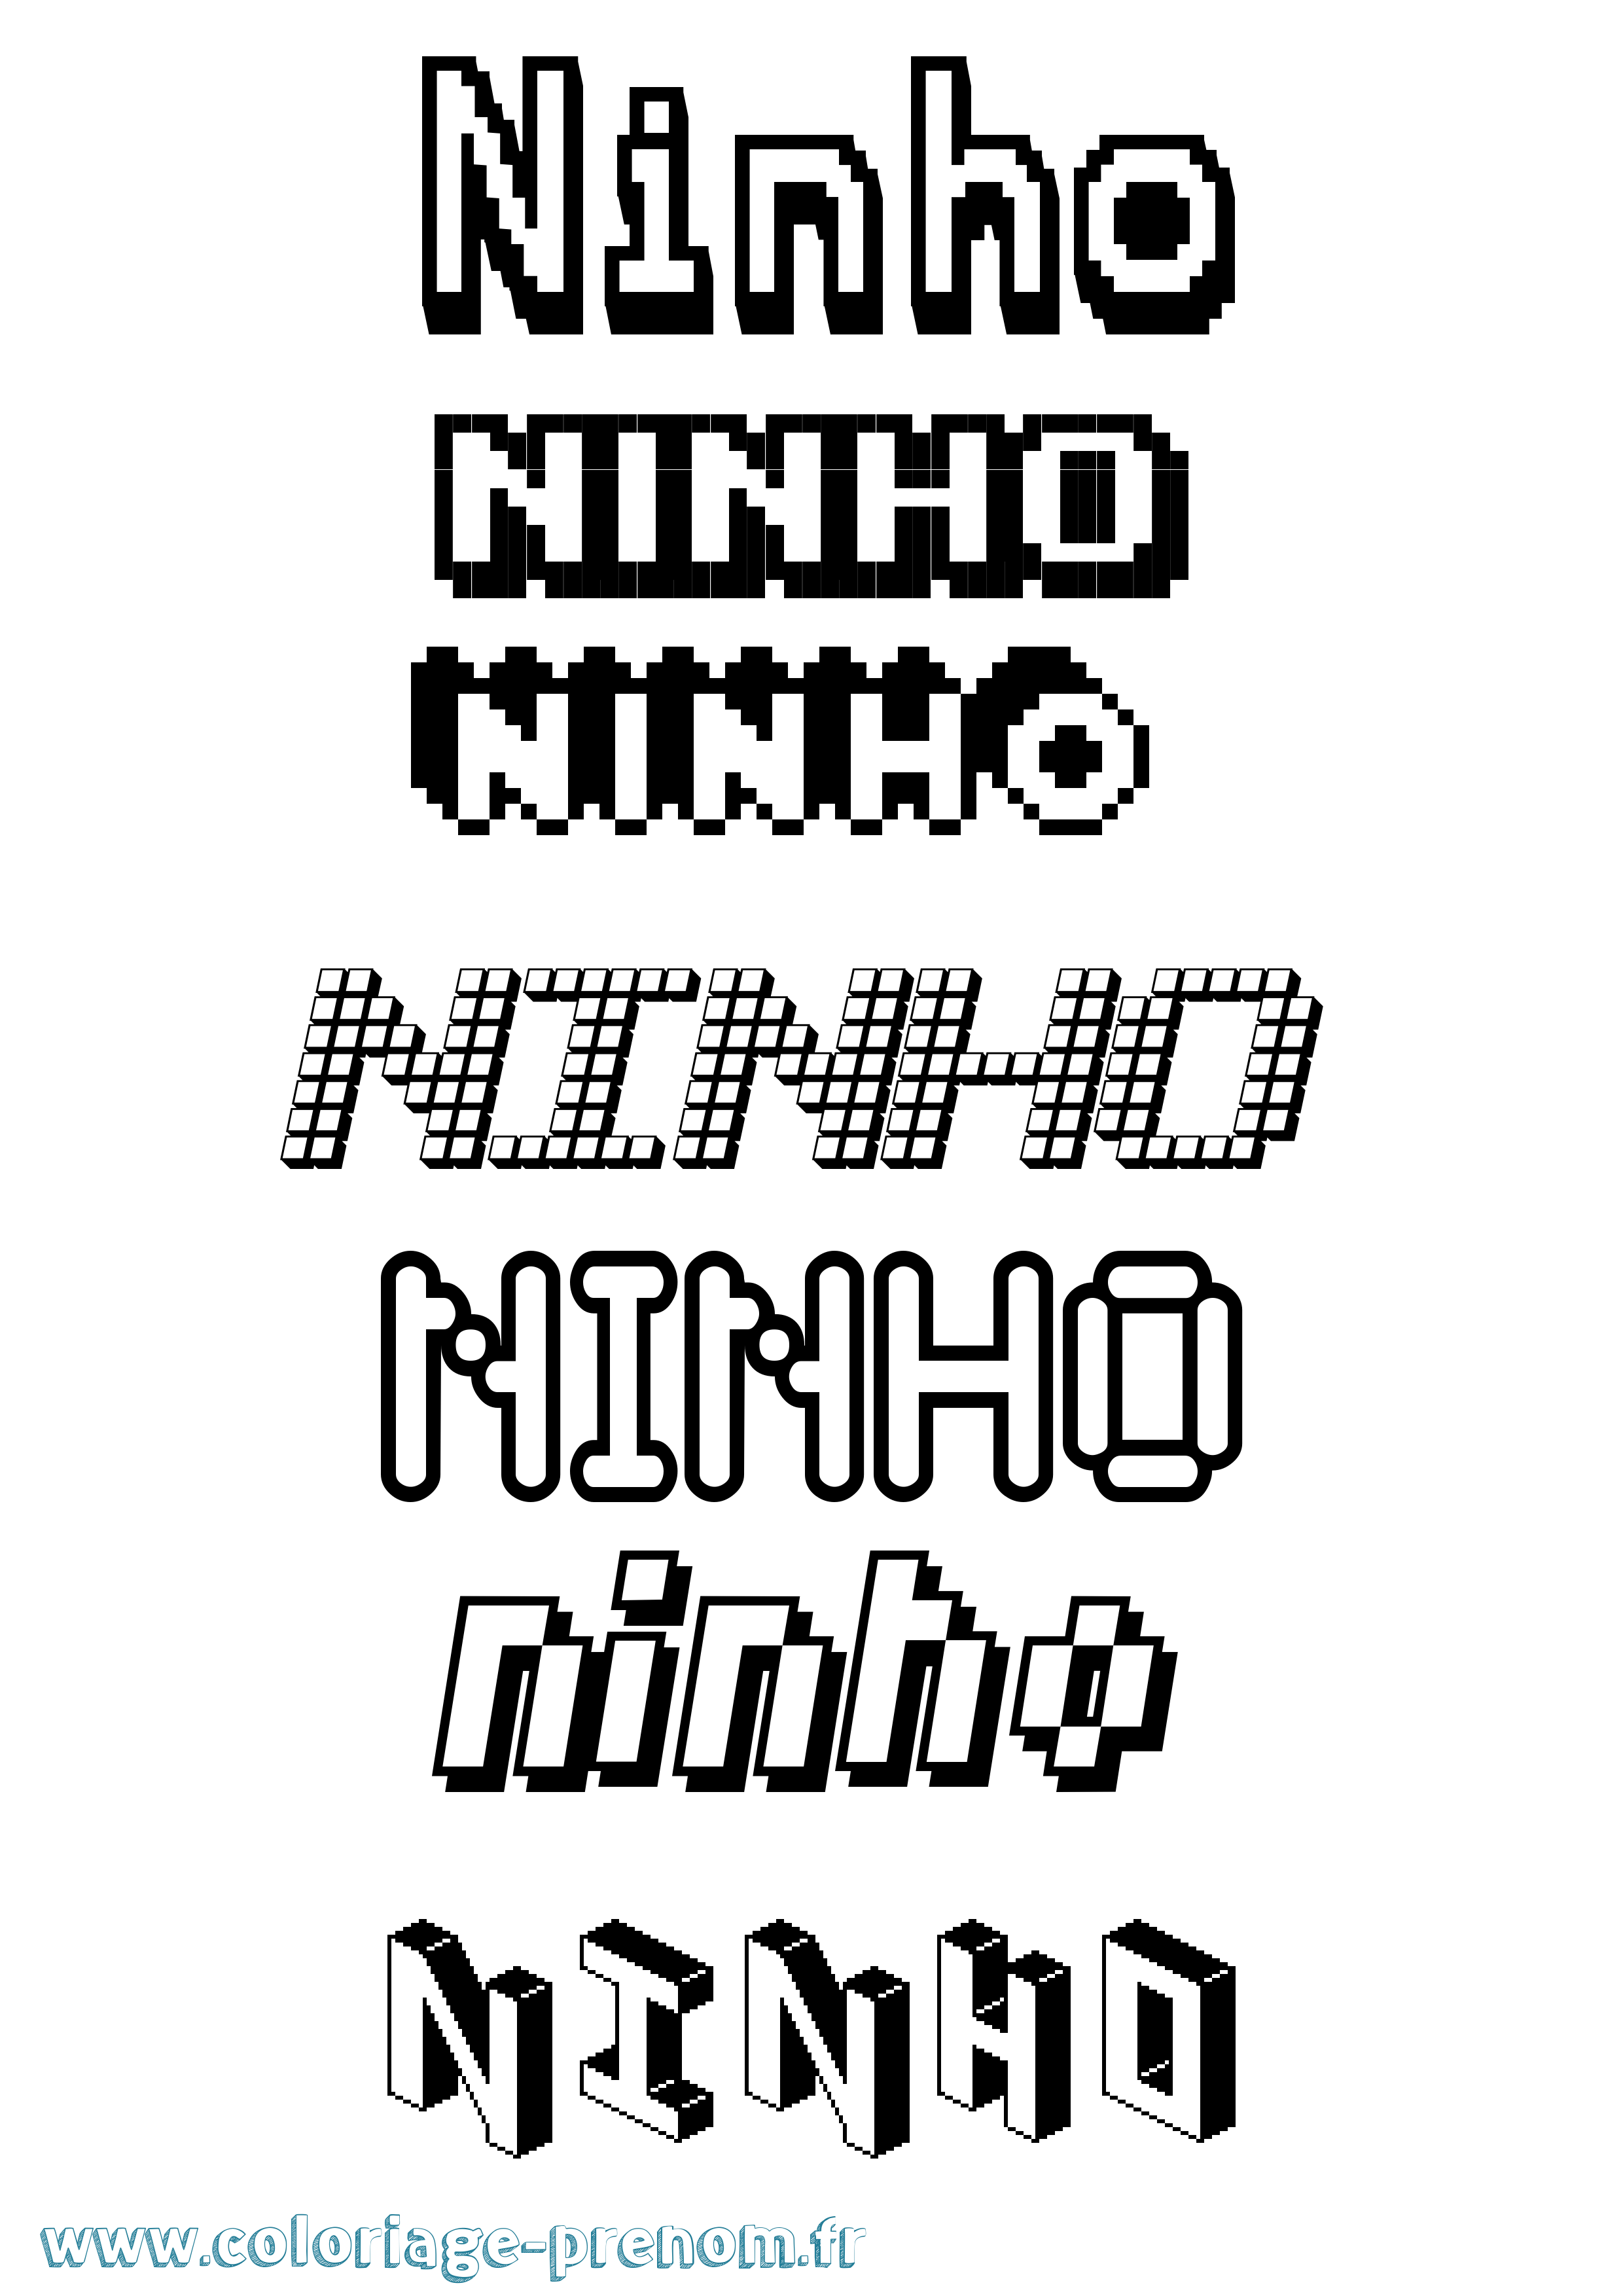 Coloriage prénom Ninho Pixel